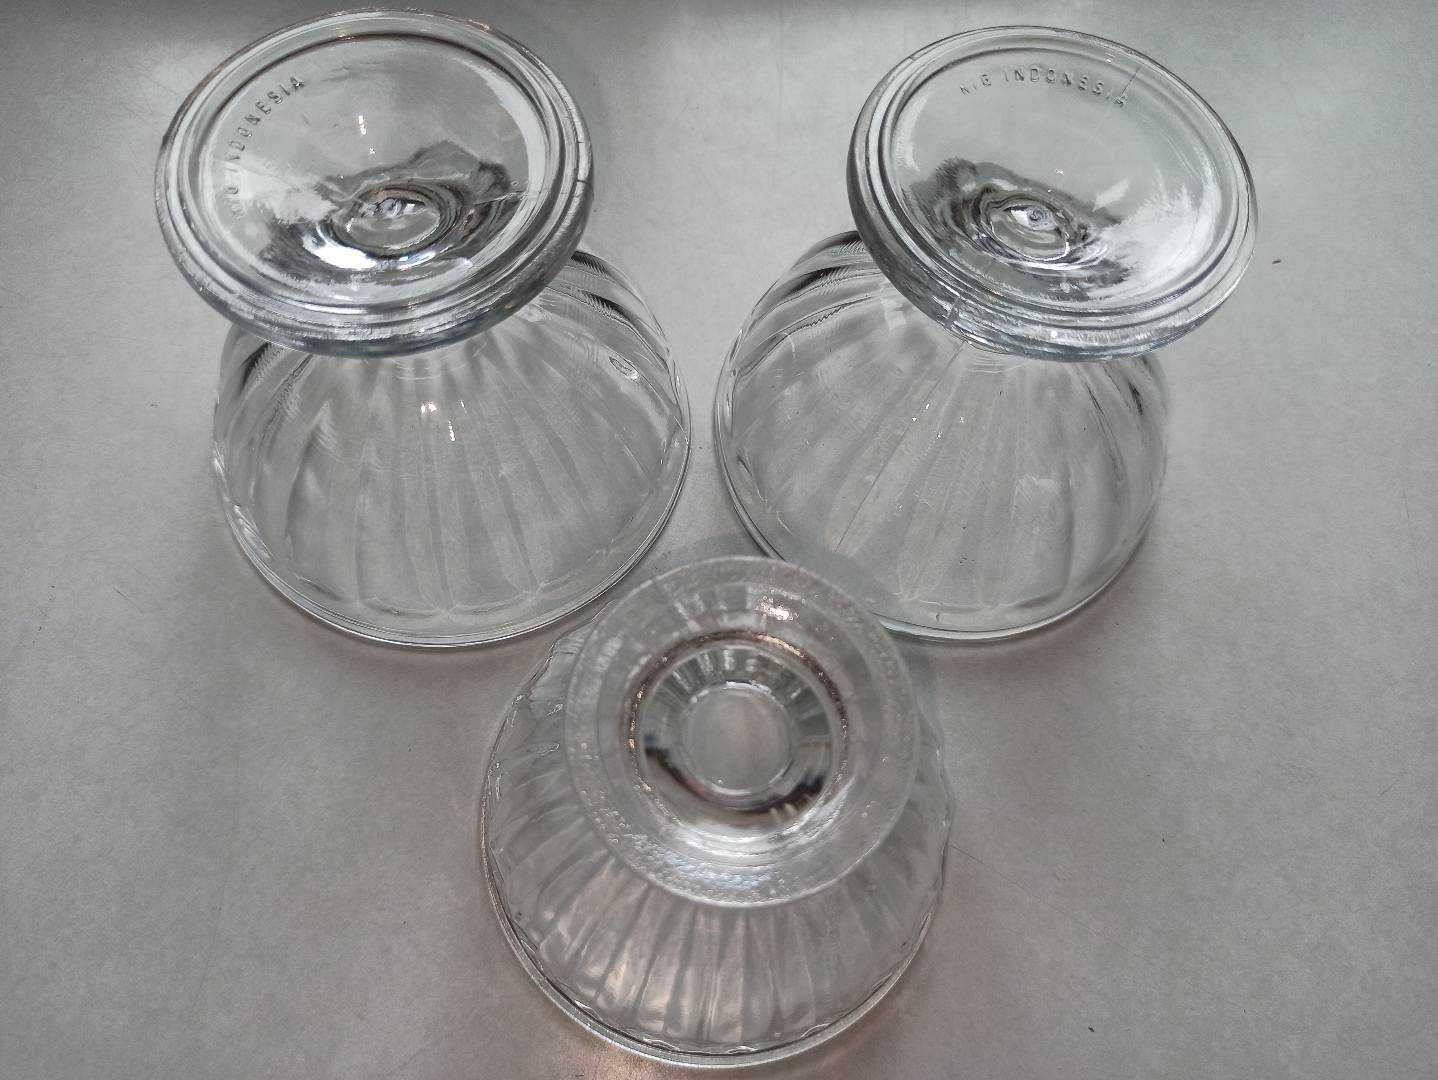 szklane kielichy deserowe ze szkła na deser - grube szkło